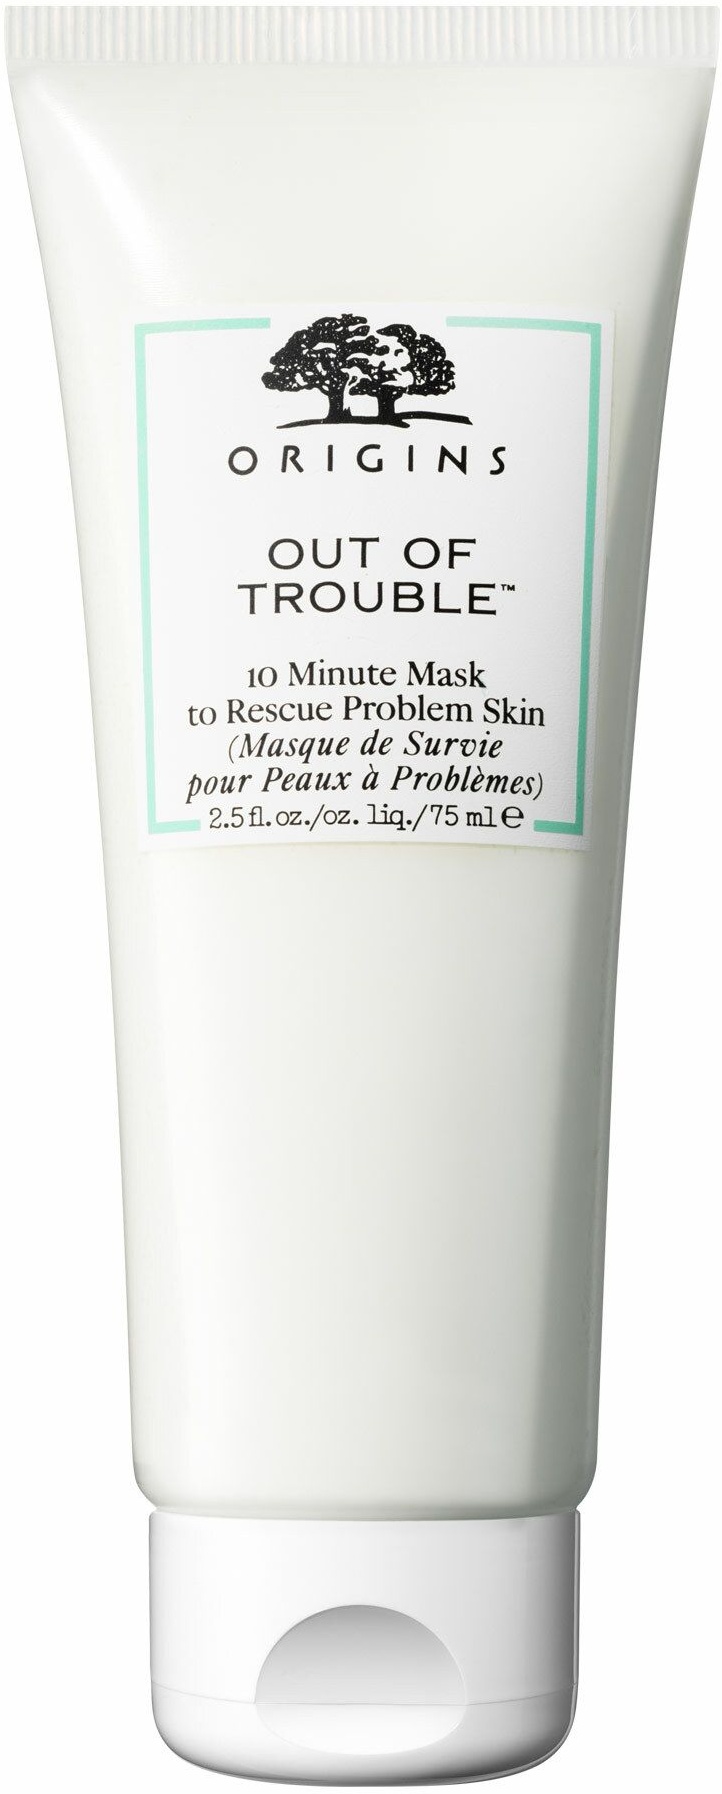 Origins Out of TroubleTM 10 Minute Mask to Rescue Problem Skin Gesichtsmaske für unreine und zu Akne neigende Haut